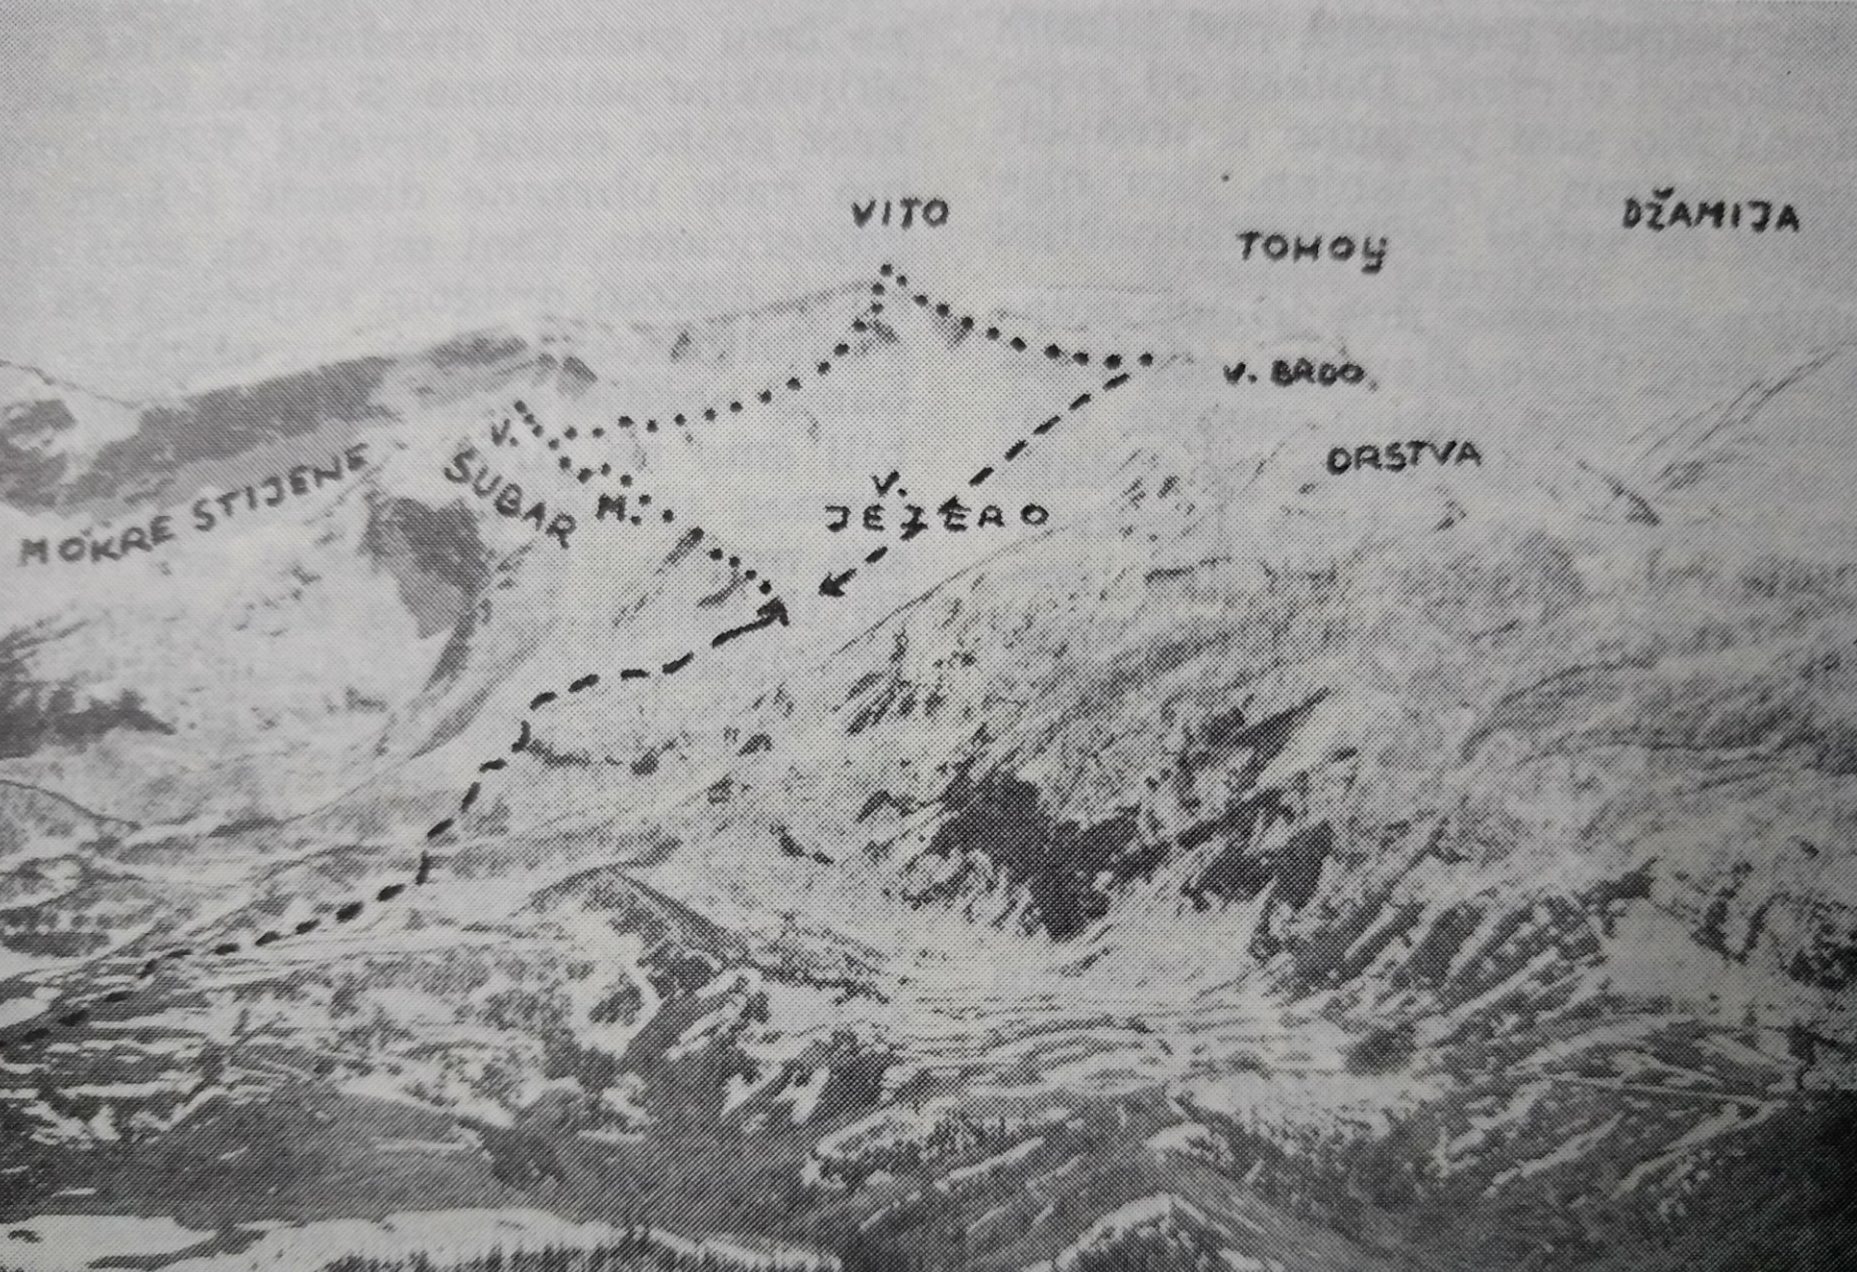  Kako je bilo obići vrhove Visočice 1976. godine